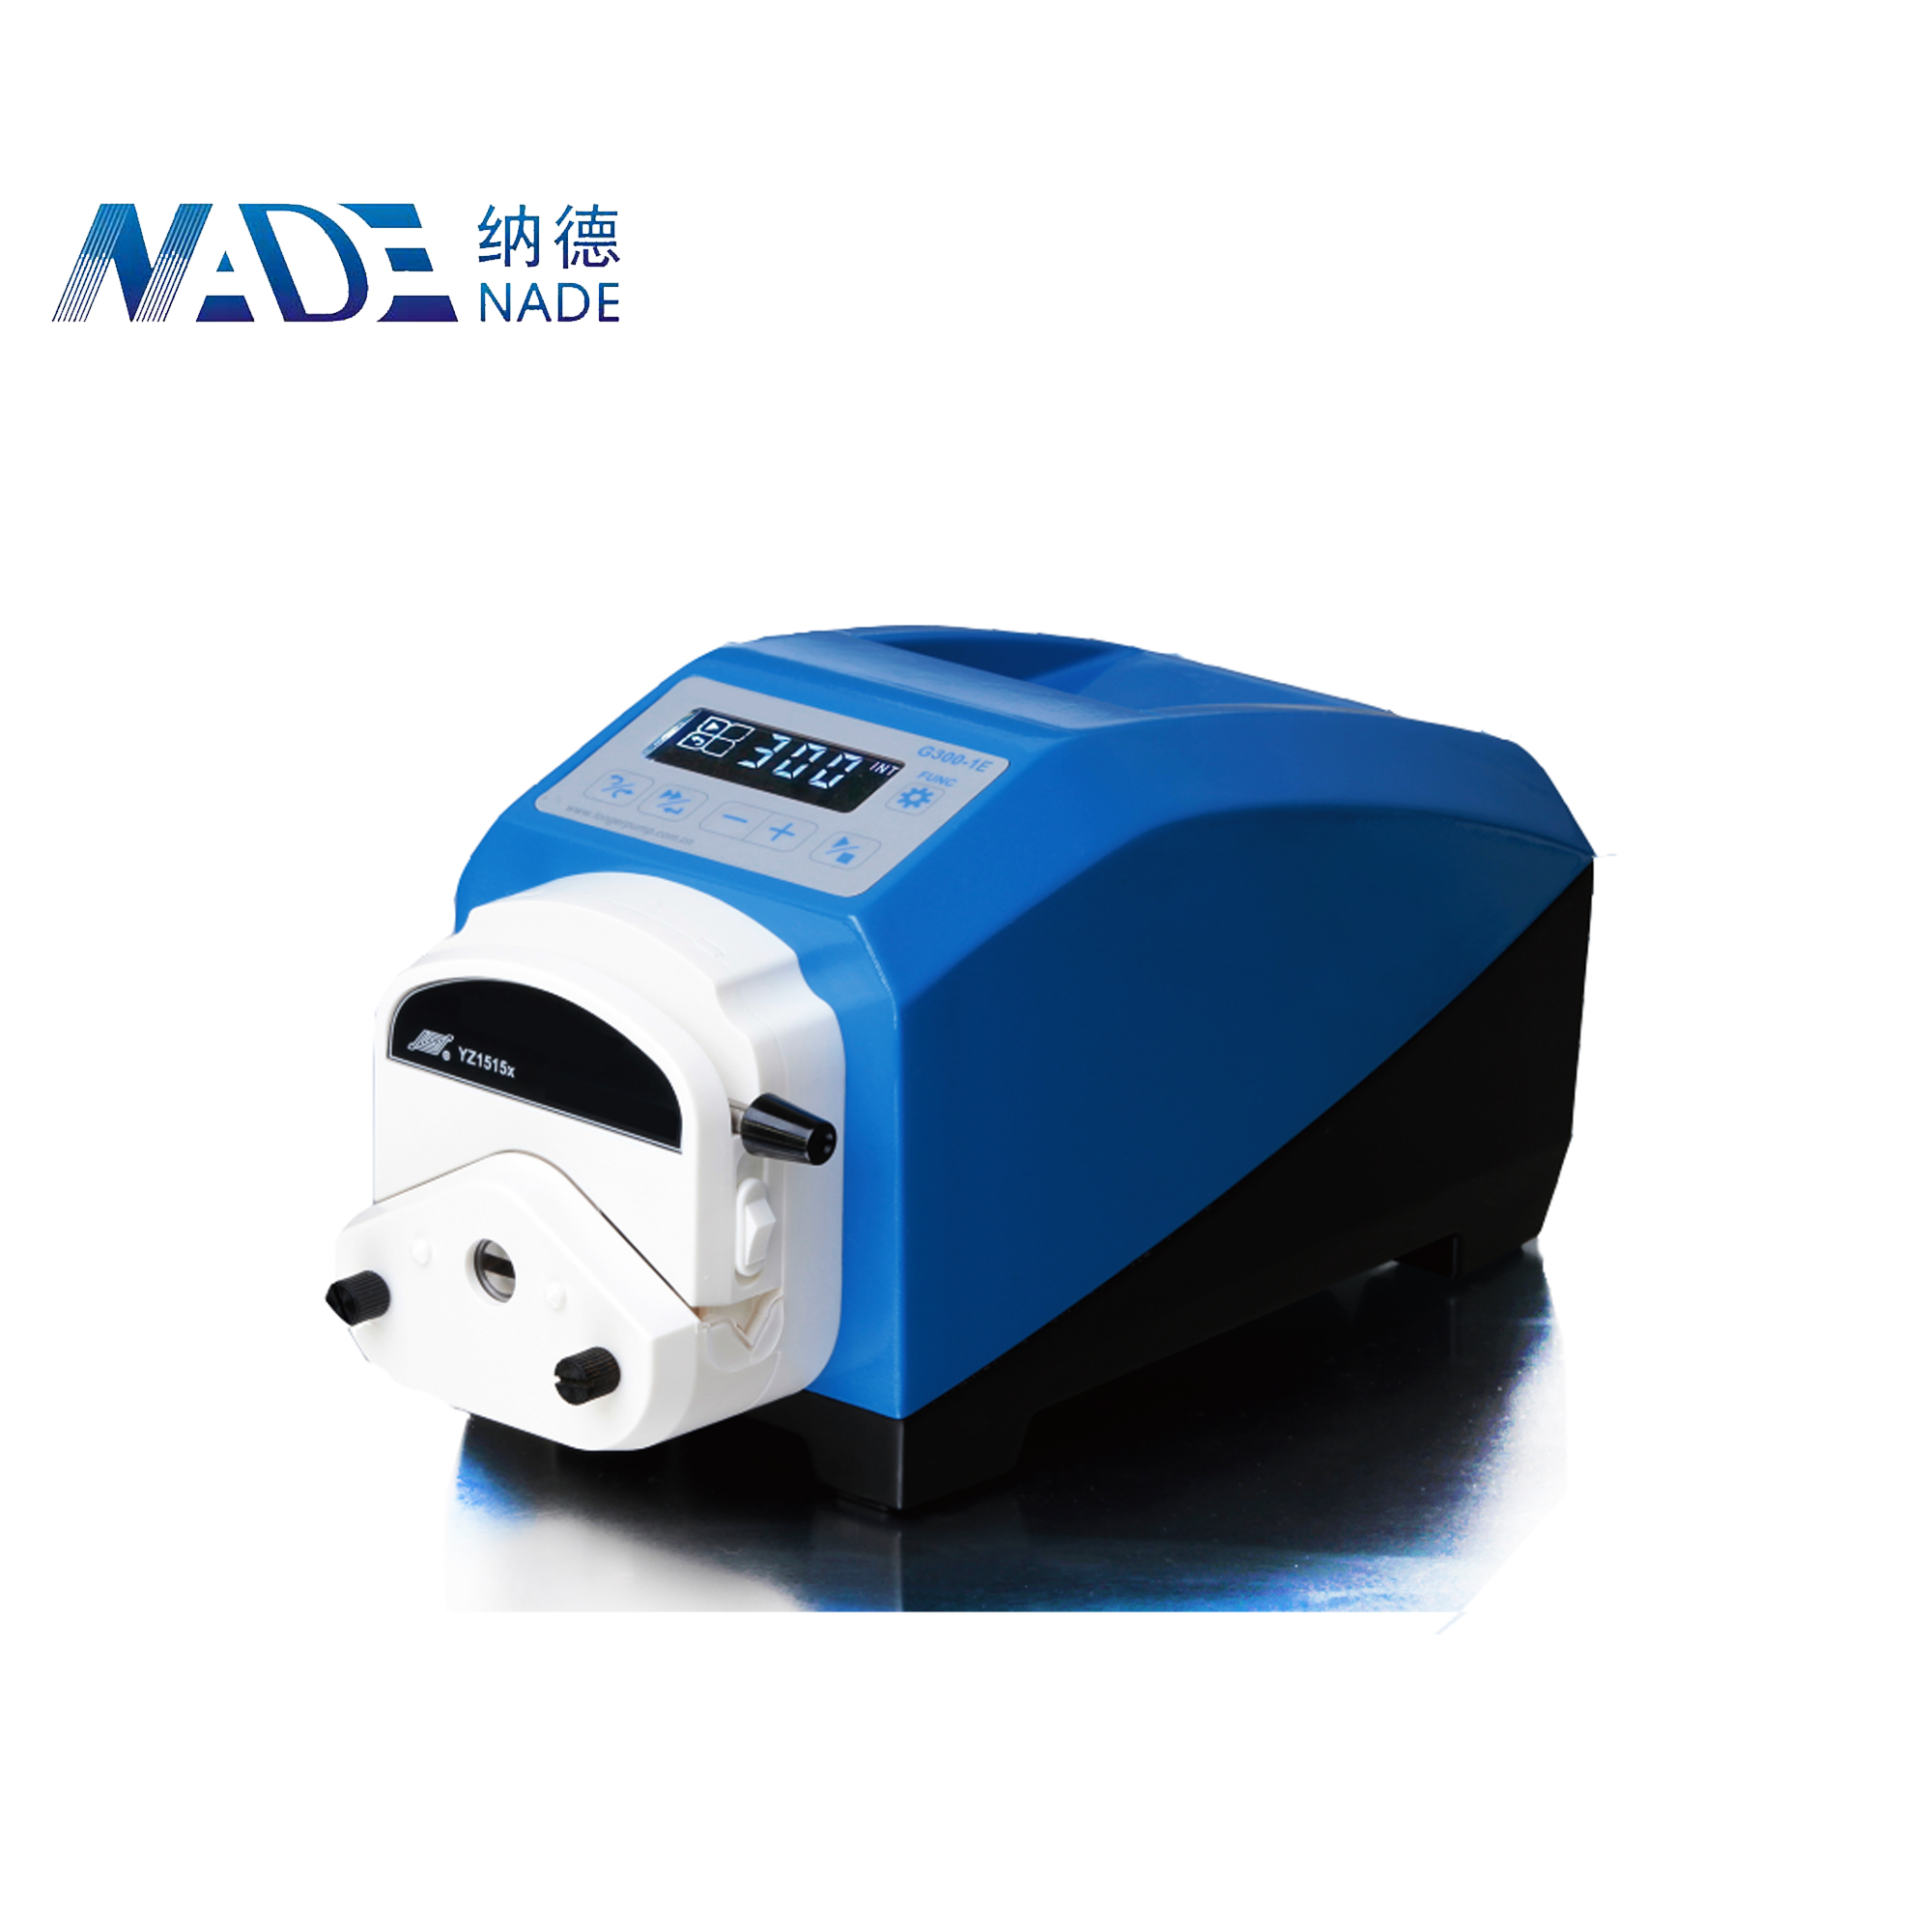 NADE G300-1J Industrial Peristaltic Pump(0~1500ml/min)